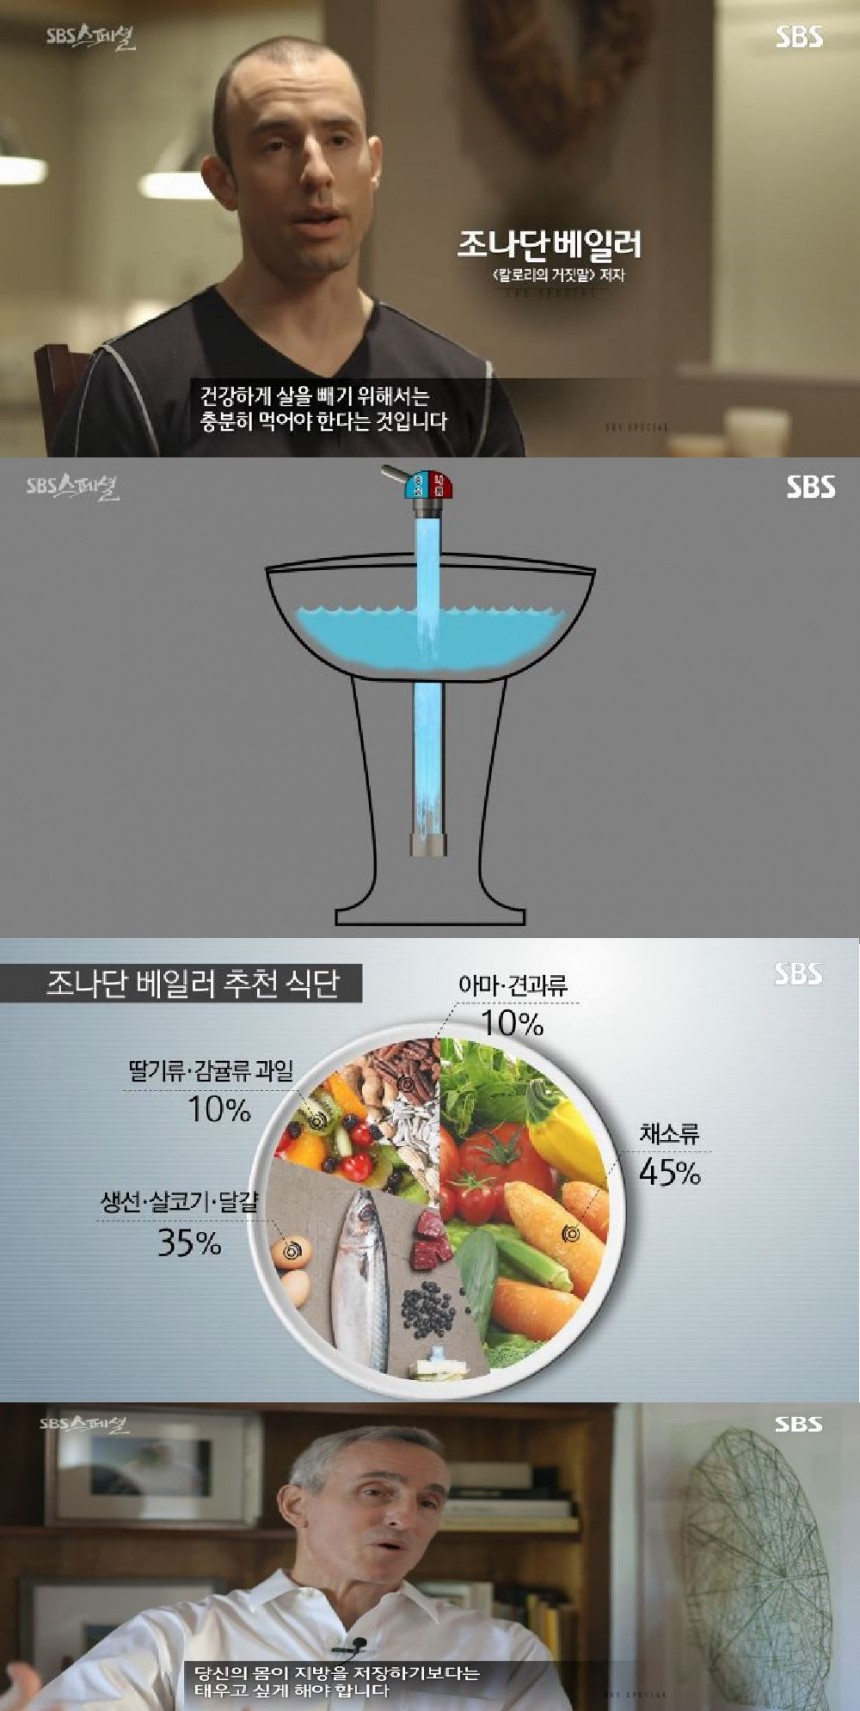 ‘SBS 스페셜’ 방송 캡쳐 